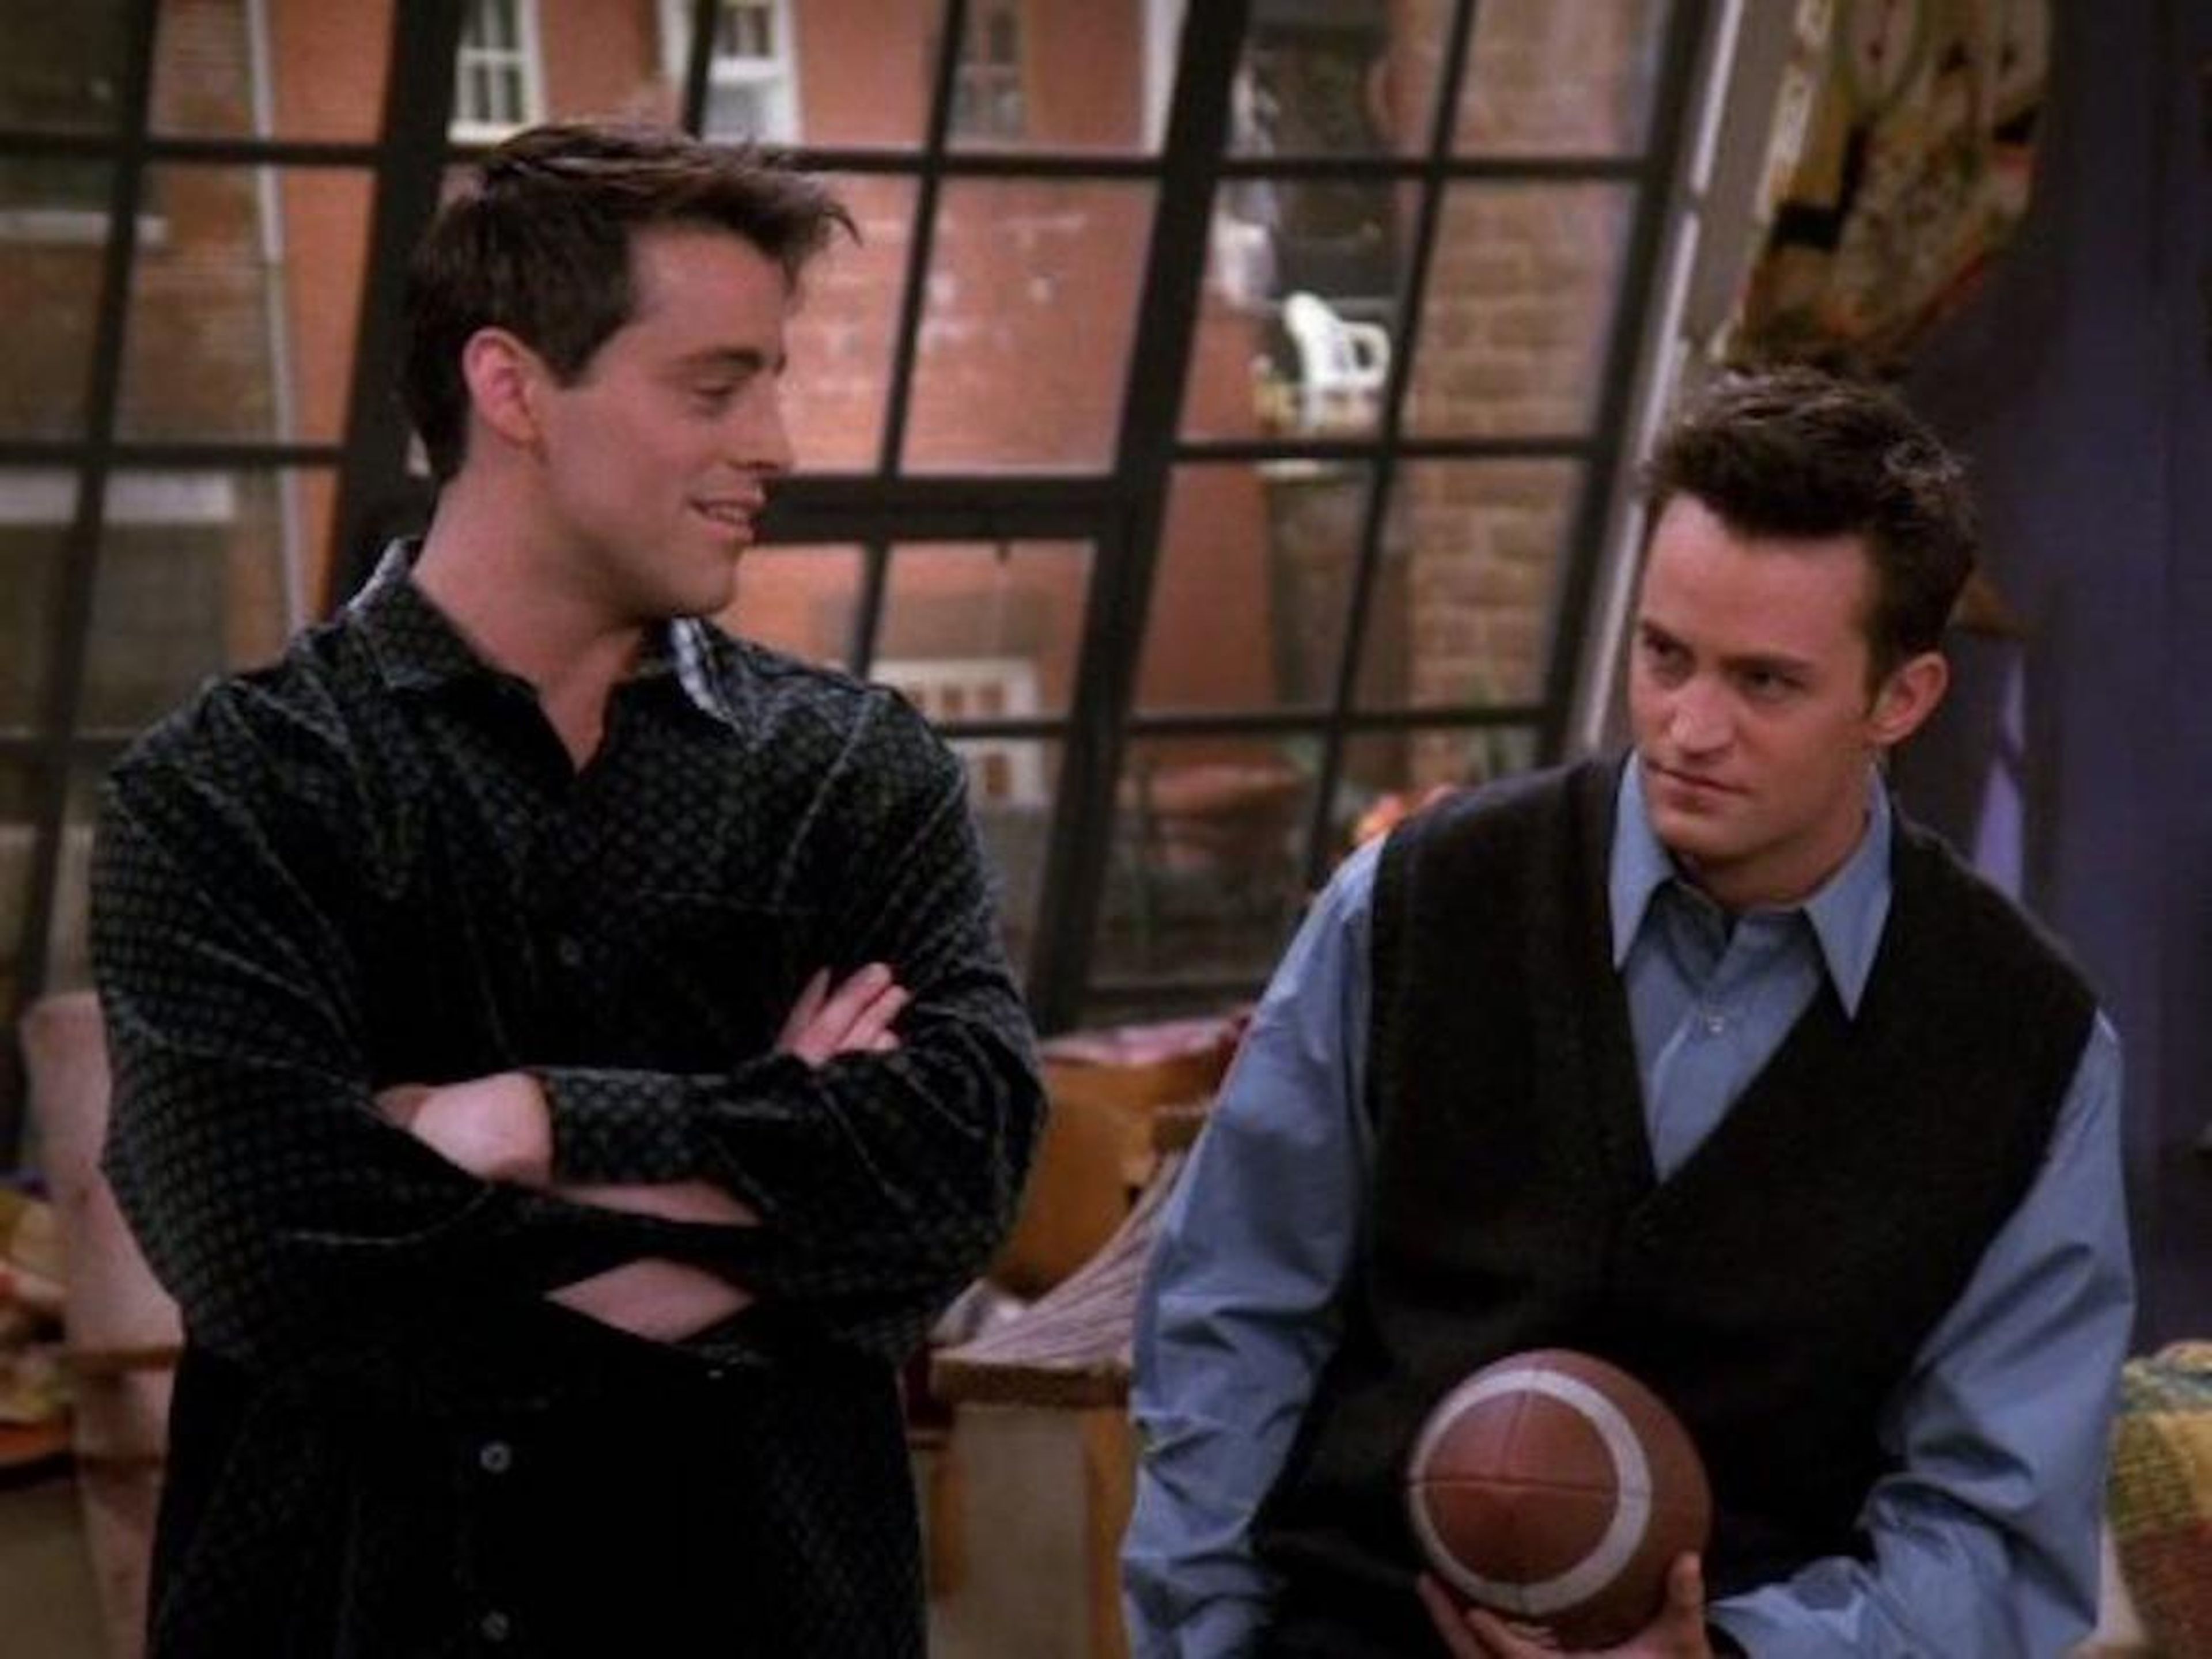 Los actores Matthew Perry y Matt LeBlanc, interpretaron a compañeros de cuarto en la serie "Friends".